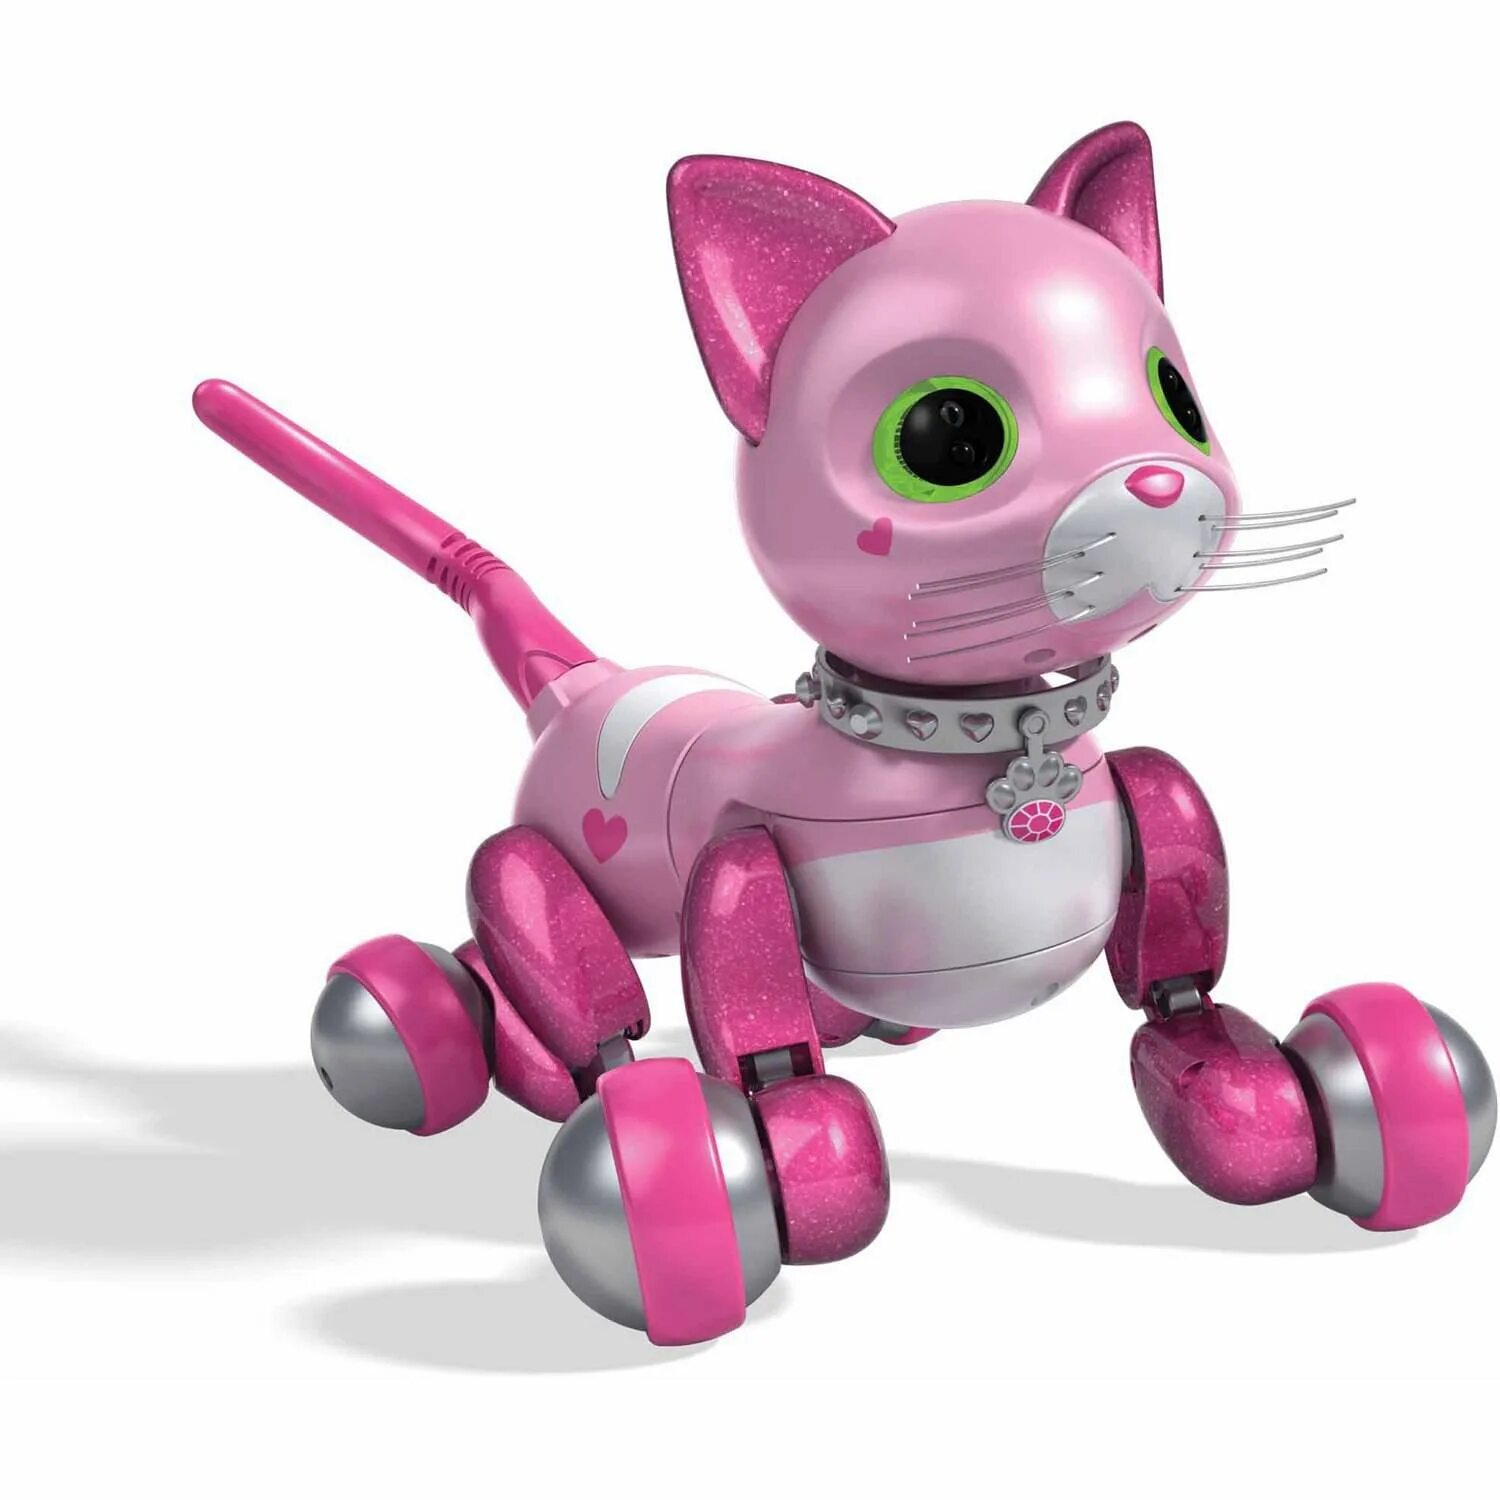 Робот zoomer Kitty. Zoomer Kitty Pink робот. Робокот MARSCAT. Интерактивная игрушка робот zoomer Kitty робот-котенок.